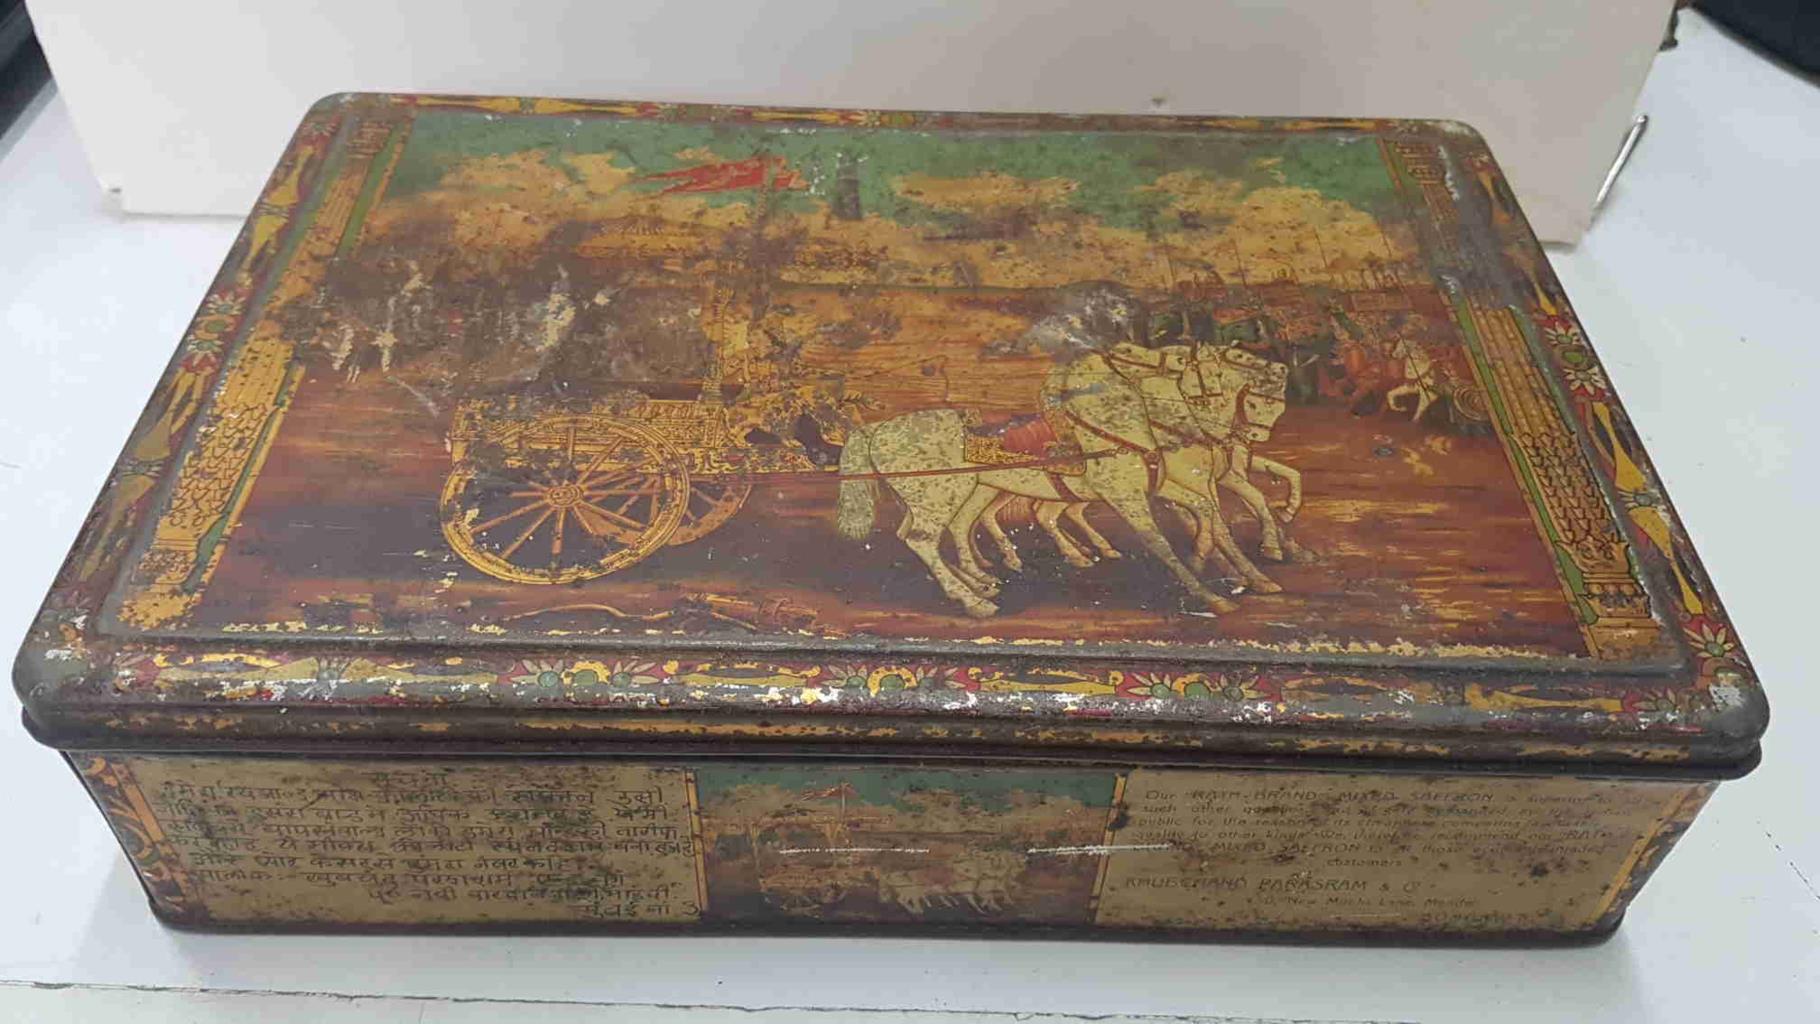 Caja metal/Lata coleccionismo: Rath Brand Mixed Saffron (Azafrán). Carro de la India tirado por 4 caballos